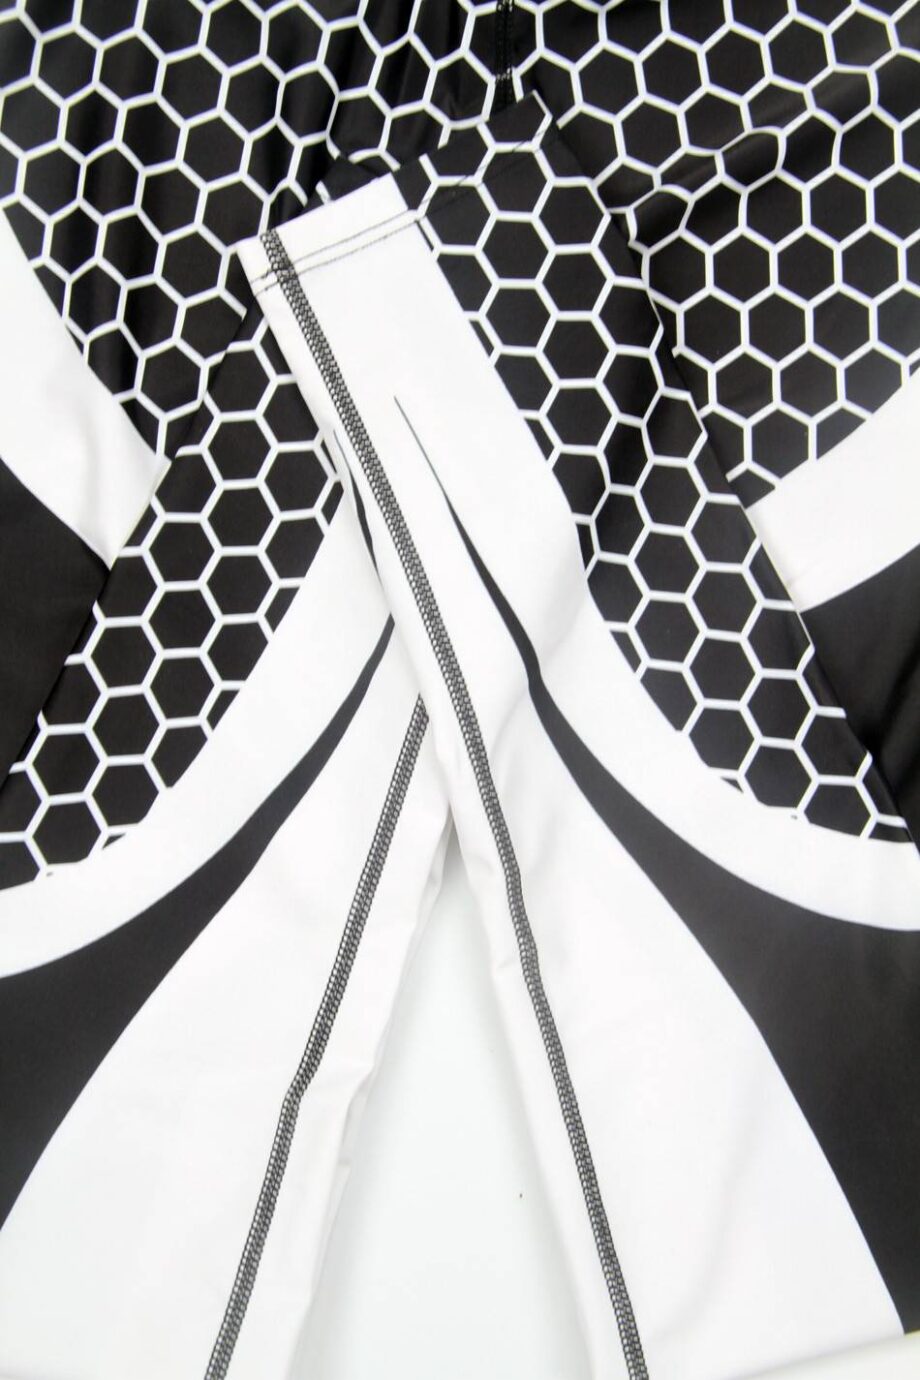 Honeycomb carbon fitness leggings for women womens clothing leggings